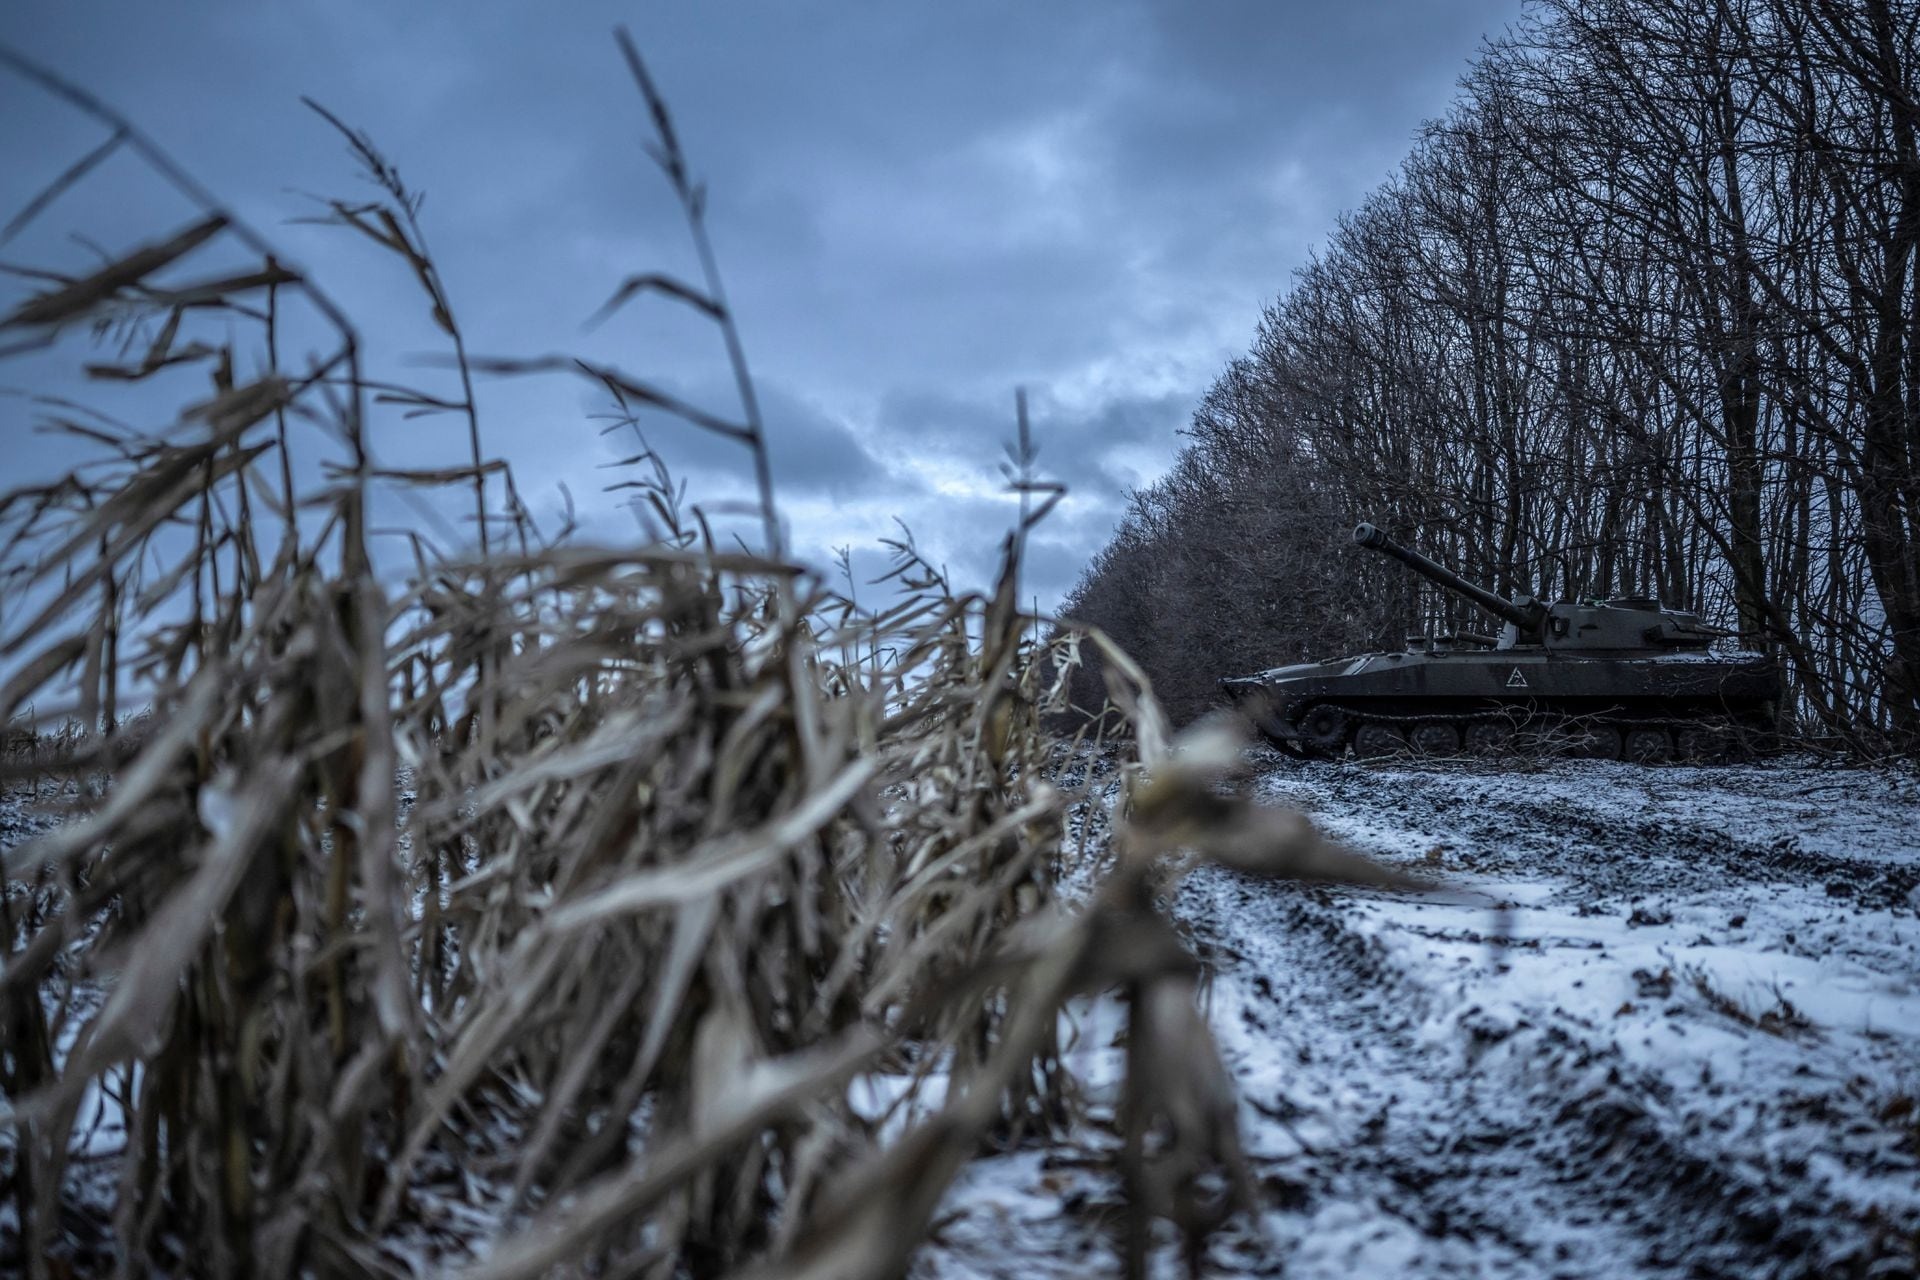 Tuyết phủ trắng nơi giao tranh giữa Ukraine và Nga, binh lính co ro vì giá lạnh - Ảnh 4.